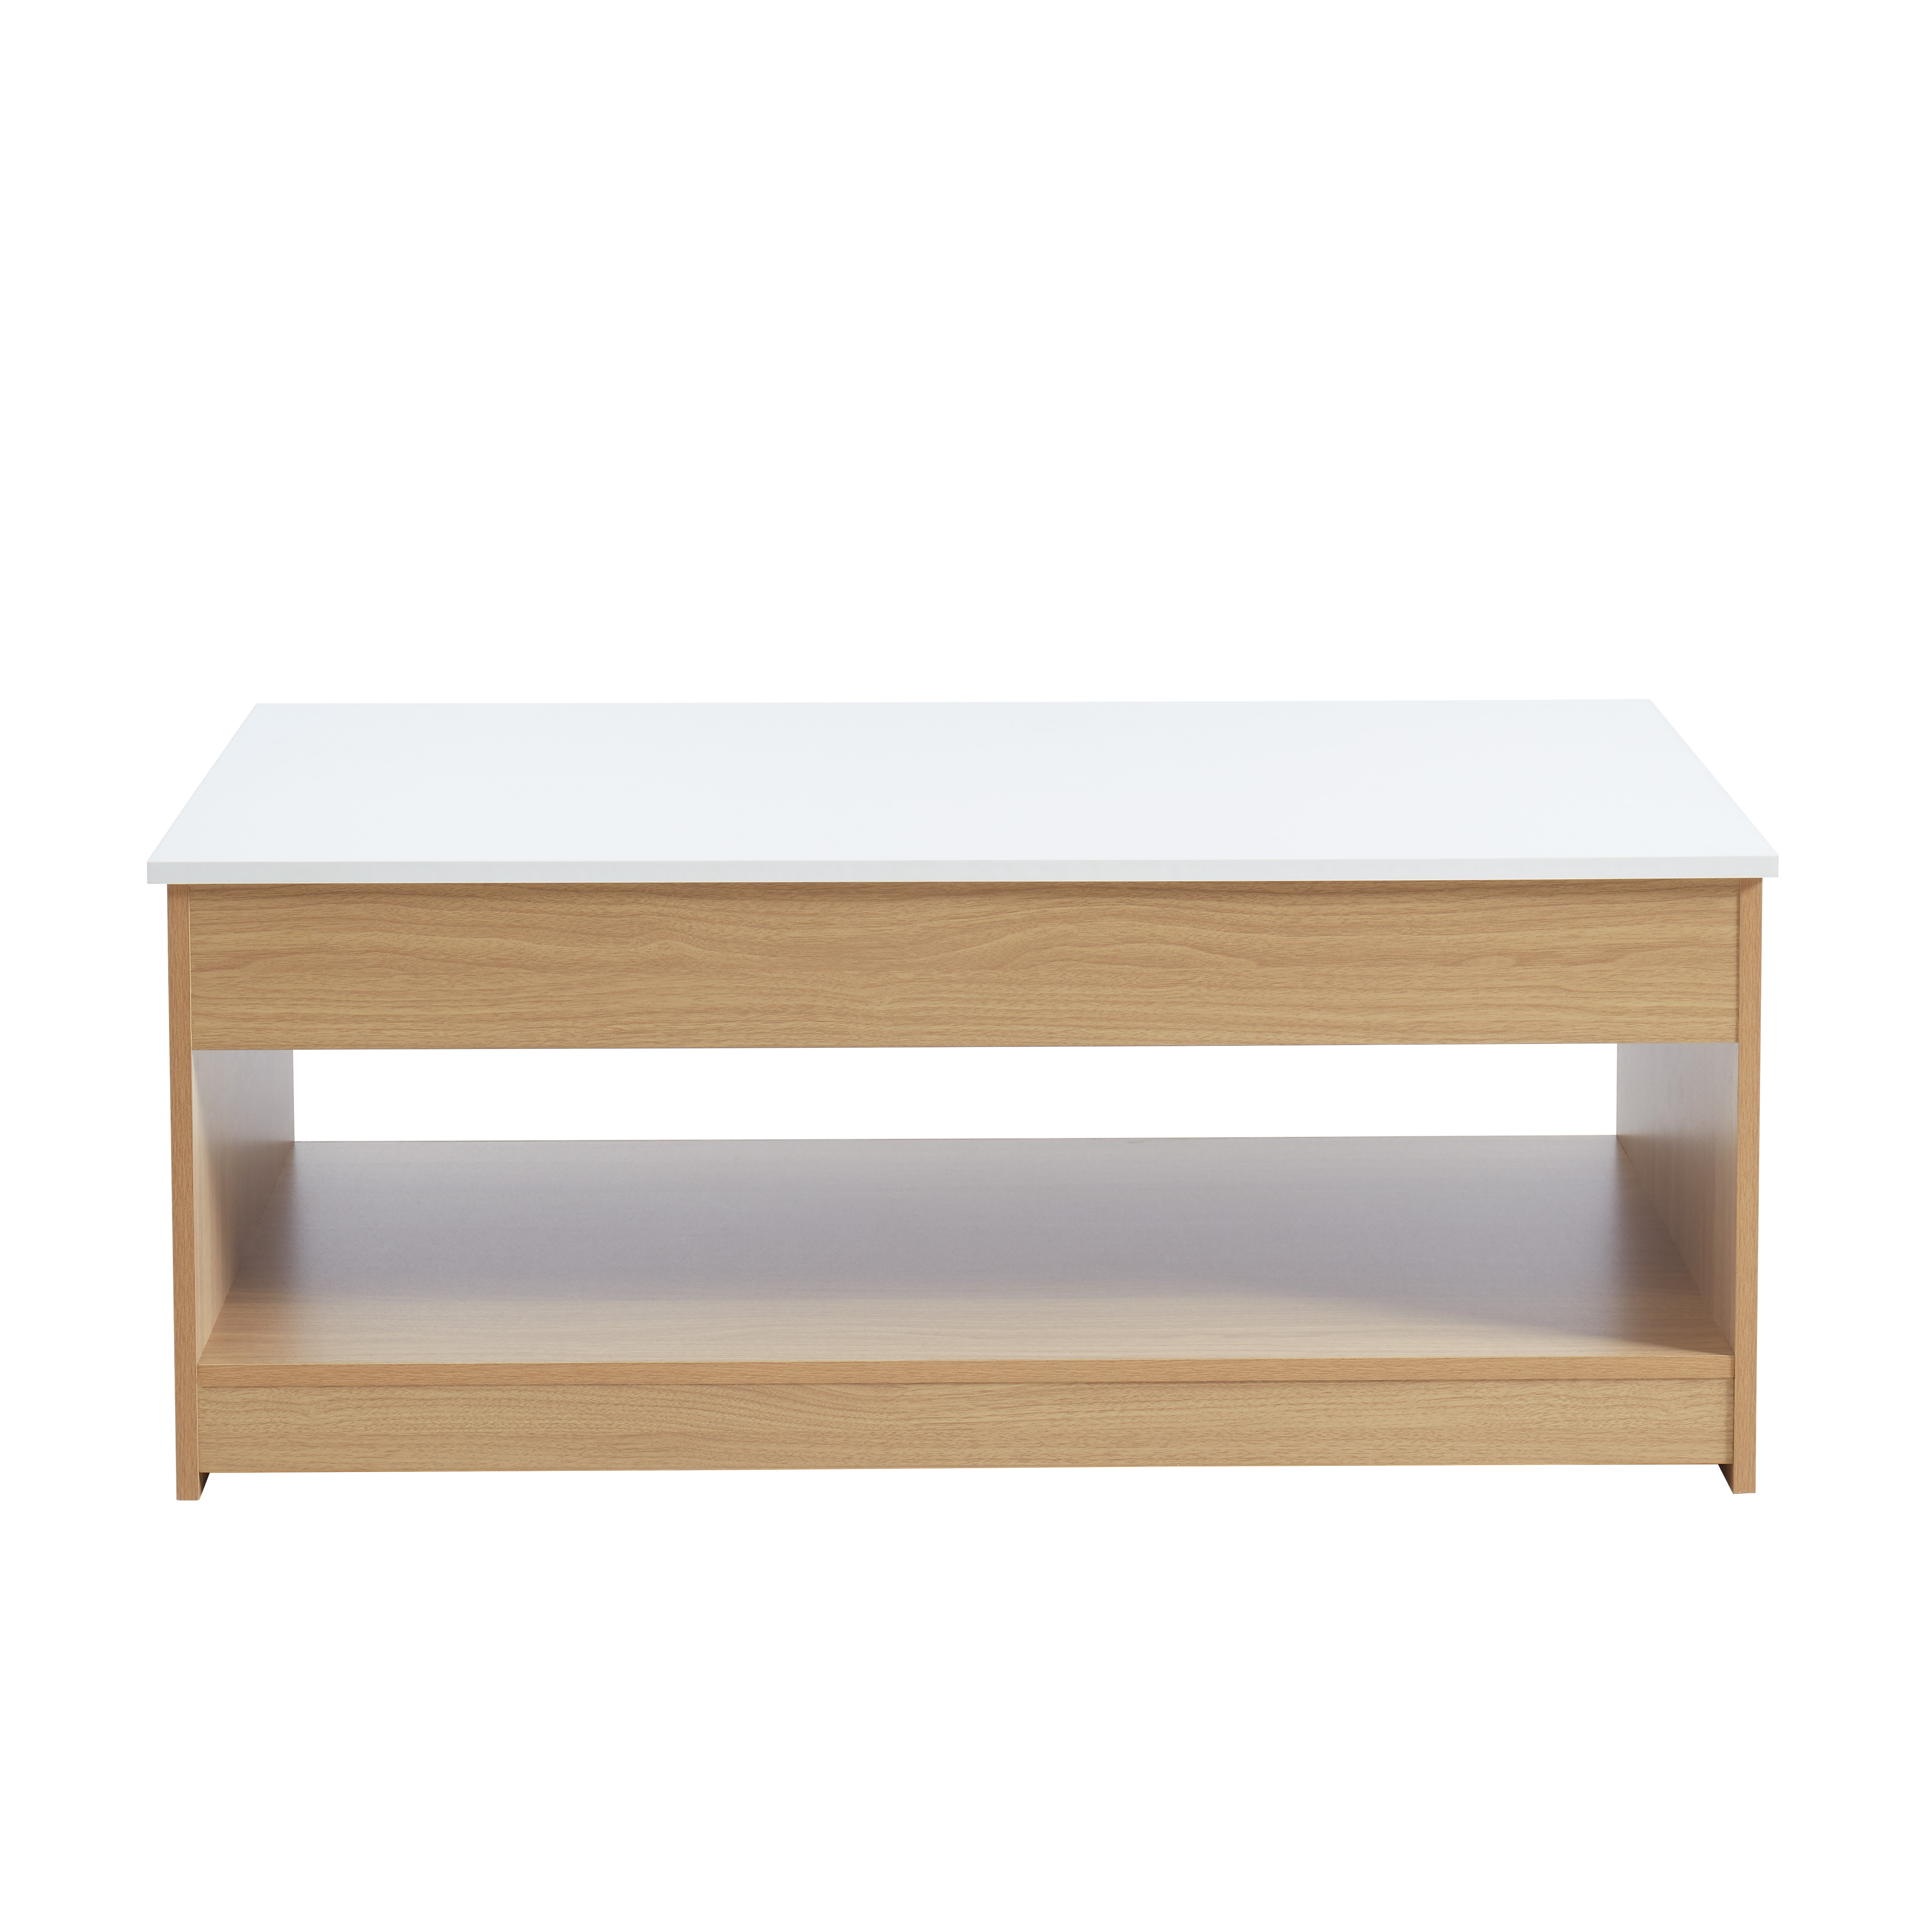 Table basse blanc et effet bois plateau relevable - l110cm